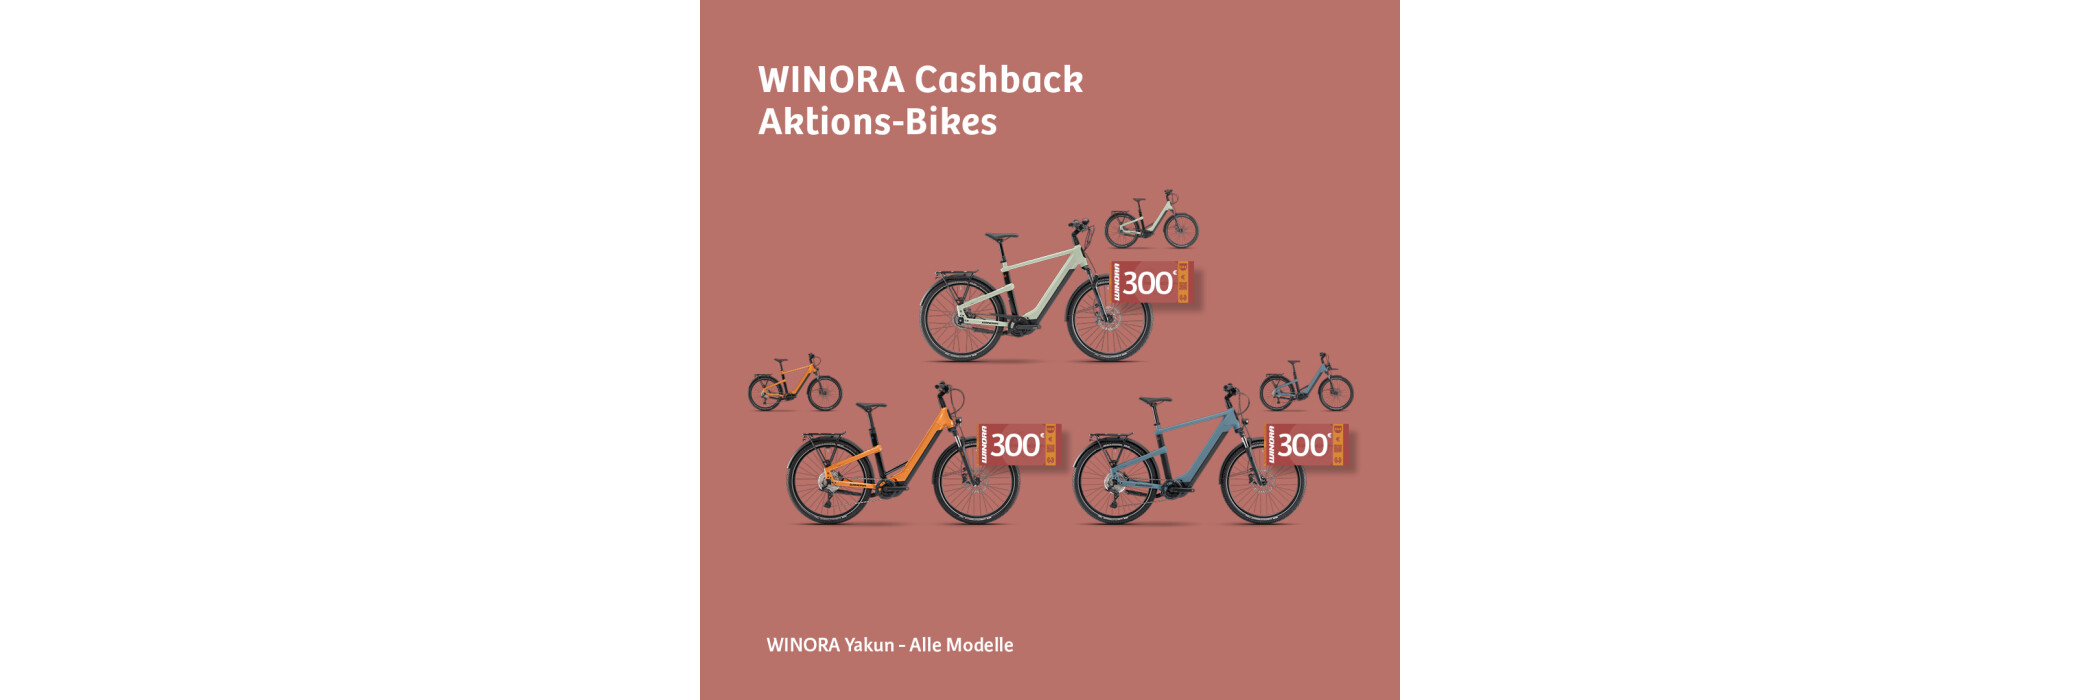 Winora Cahsback 300€